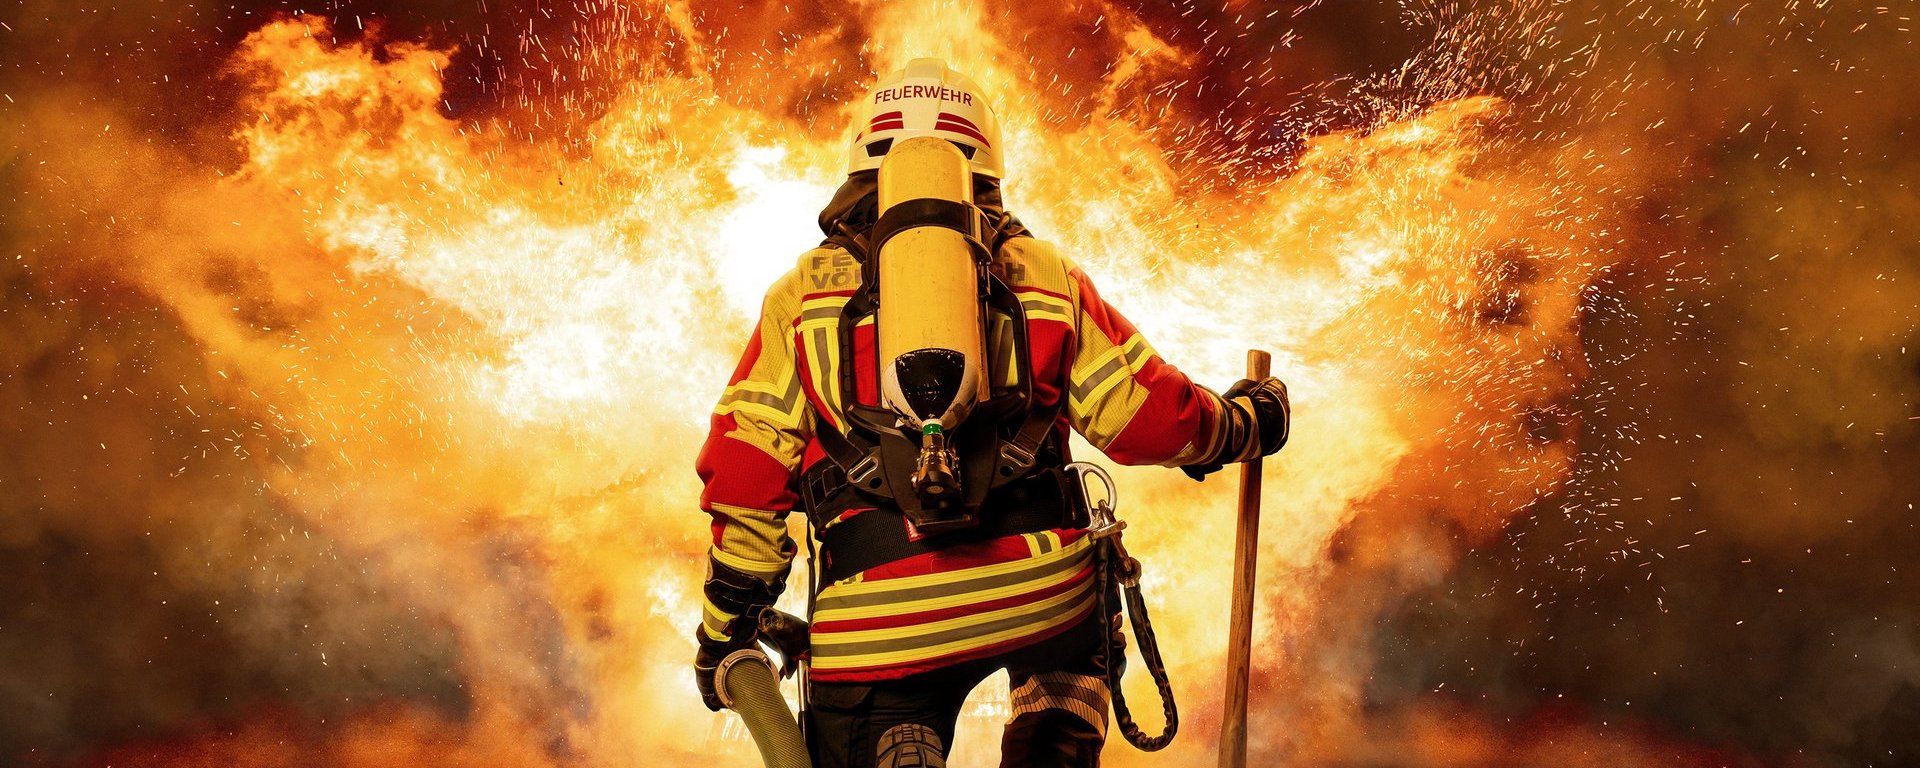 Ein Feuerwehrmann mit Schutzkleidung, Sauerstoffflasche, Beil und Wasserschlauch ist von hinten zu sehen und einem großen, lodernden Feuer zugewandt.